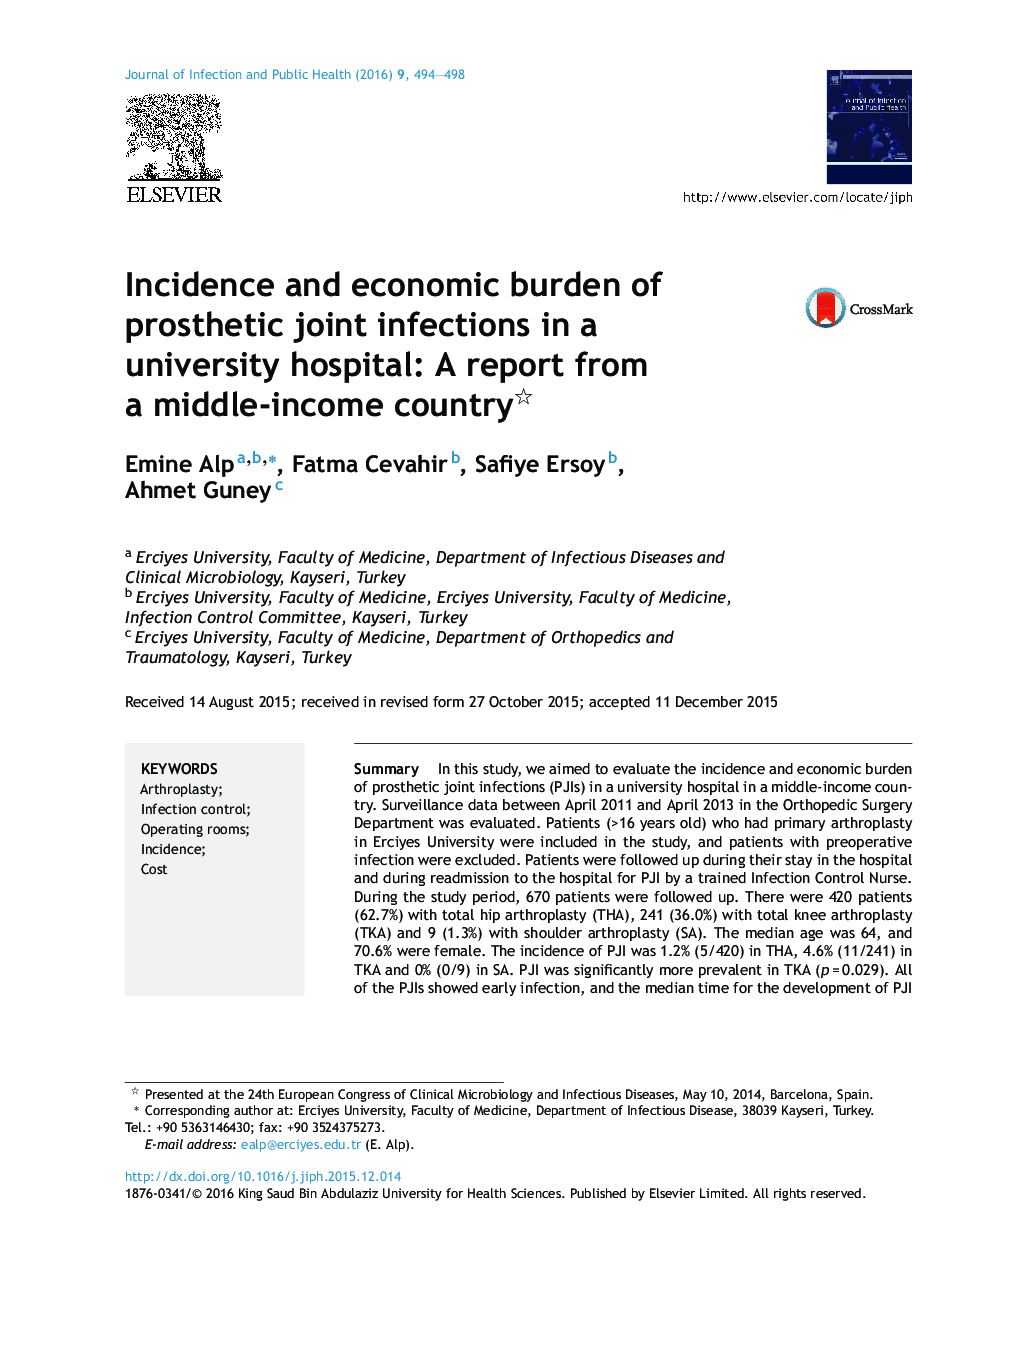 بروز و بار اقتصادی عفونت های مفاصل پروتز در یک بیمارستان دانشگاه: یک گزارش از یک کشور با درآمد متوسط